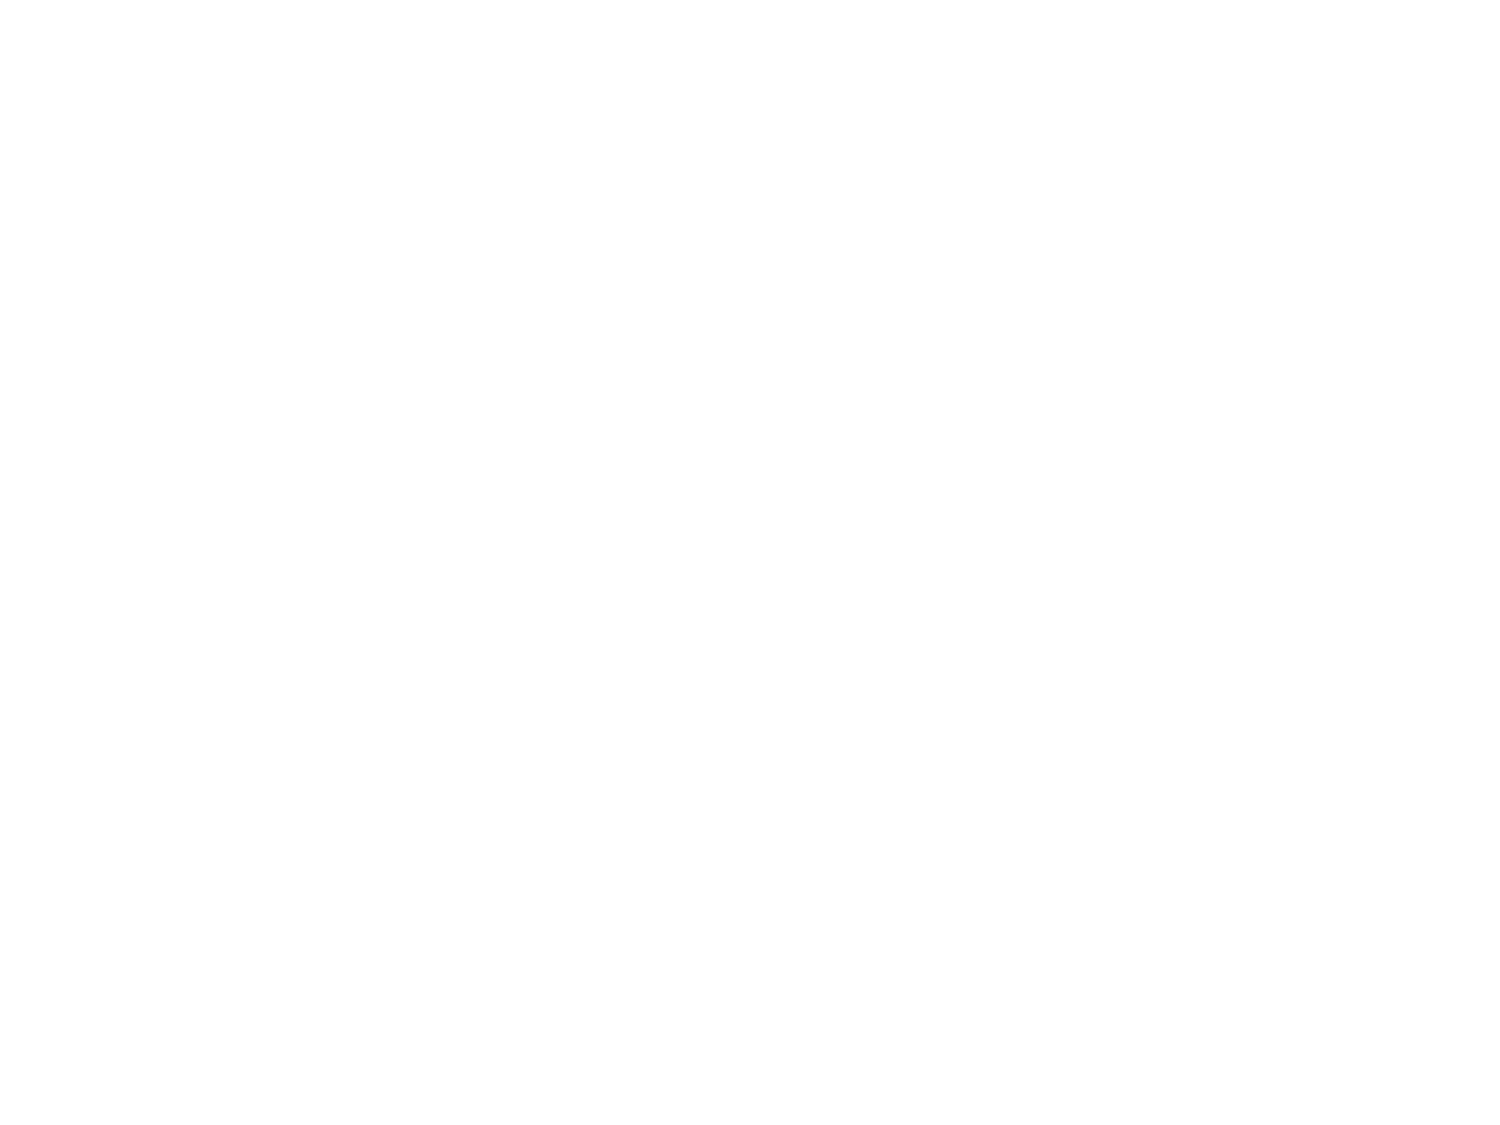 D.D. Jackson